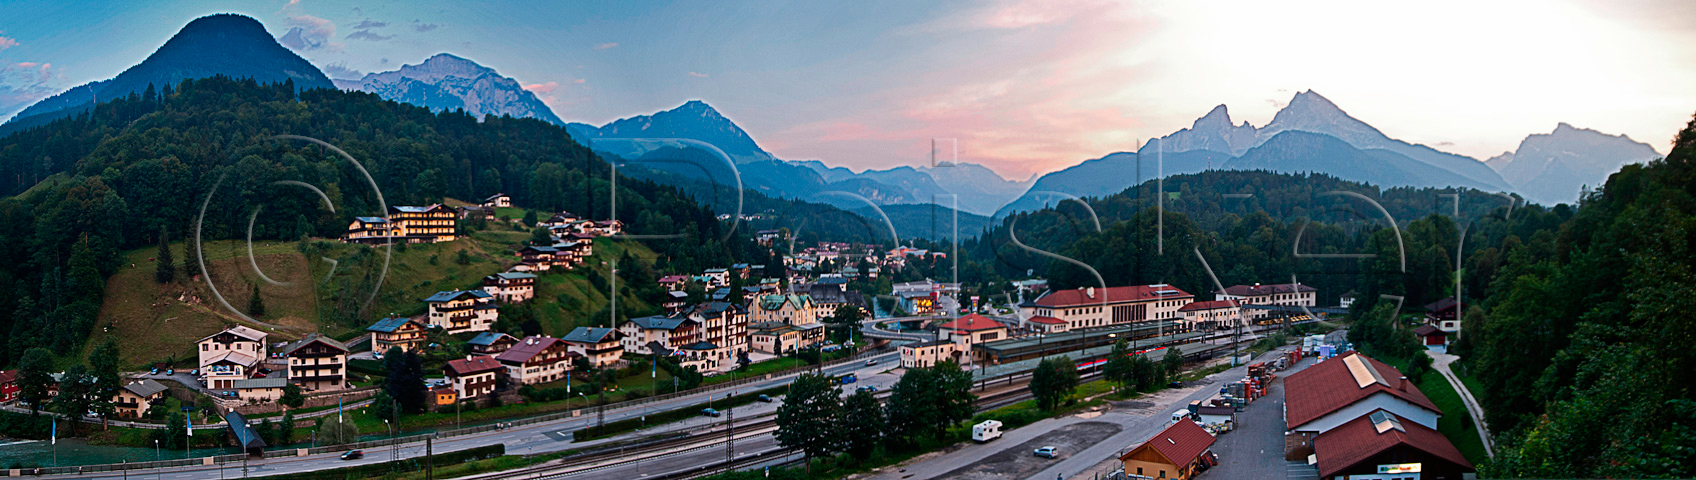 Panorama Berchtesgaden